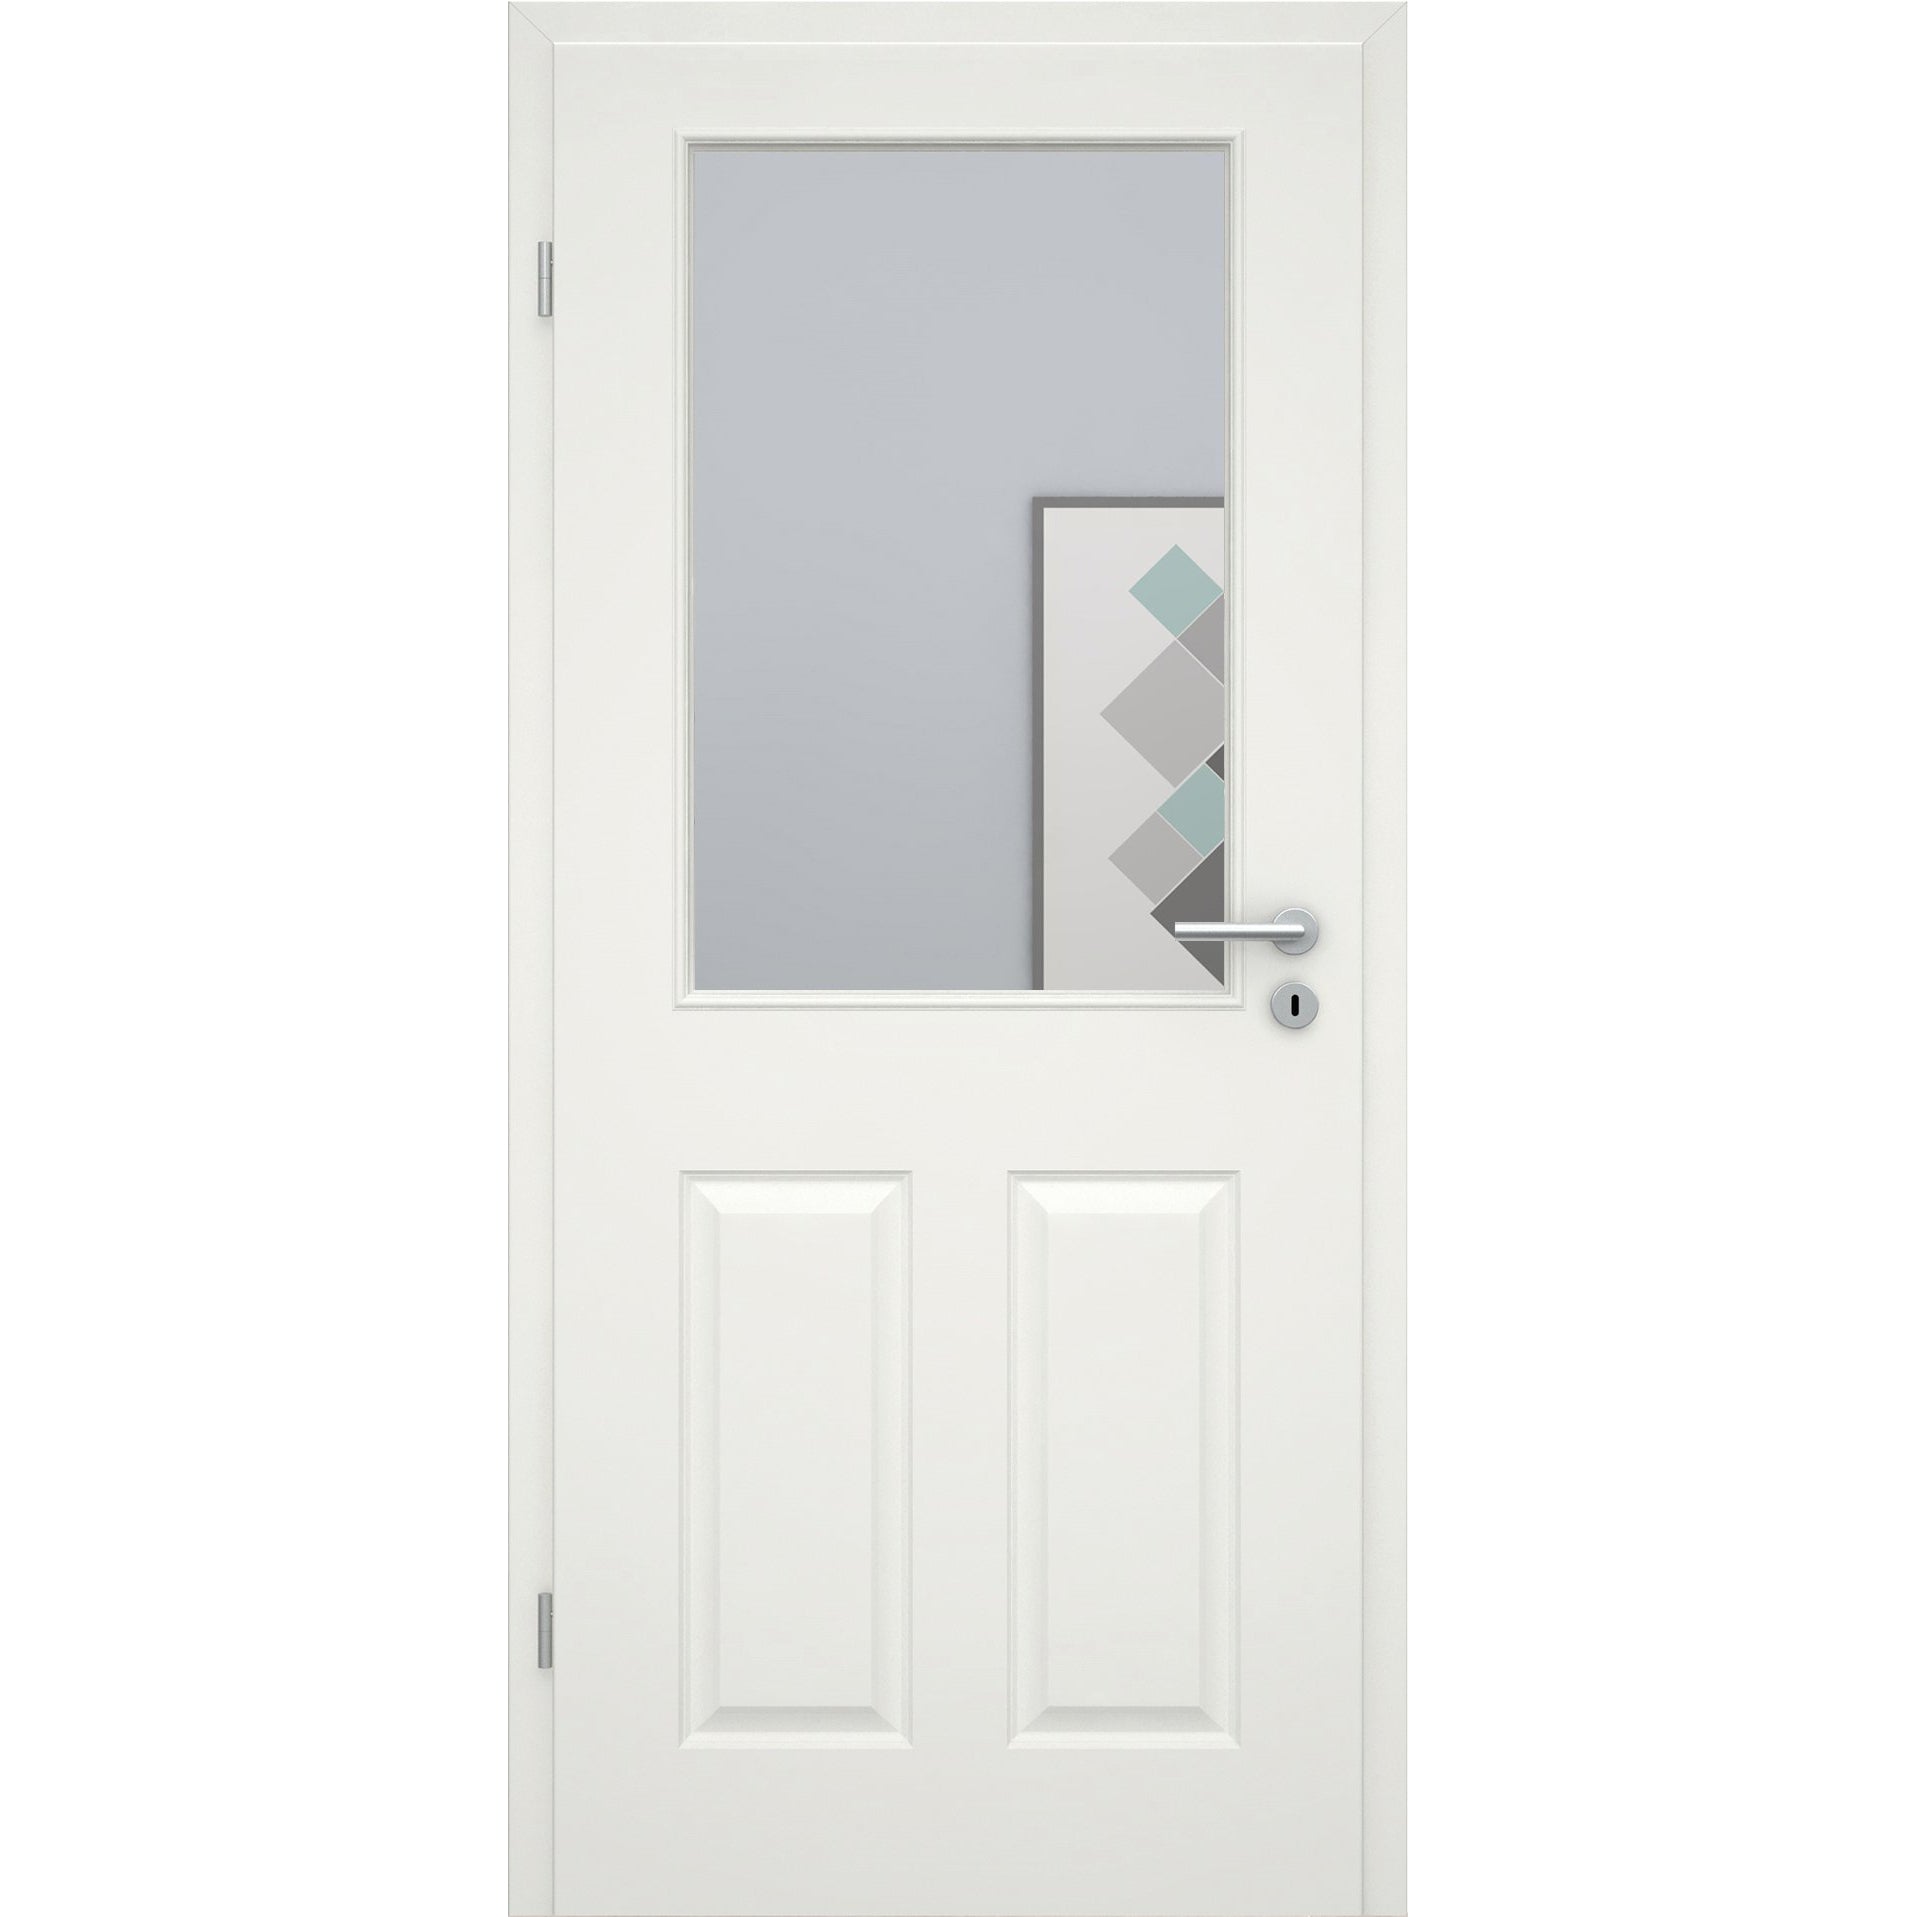 Zimmertür mit Lichtausschnitt groß soft-weiß 4 Kassetten Rundkante - Modell Stiltür K41LA